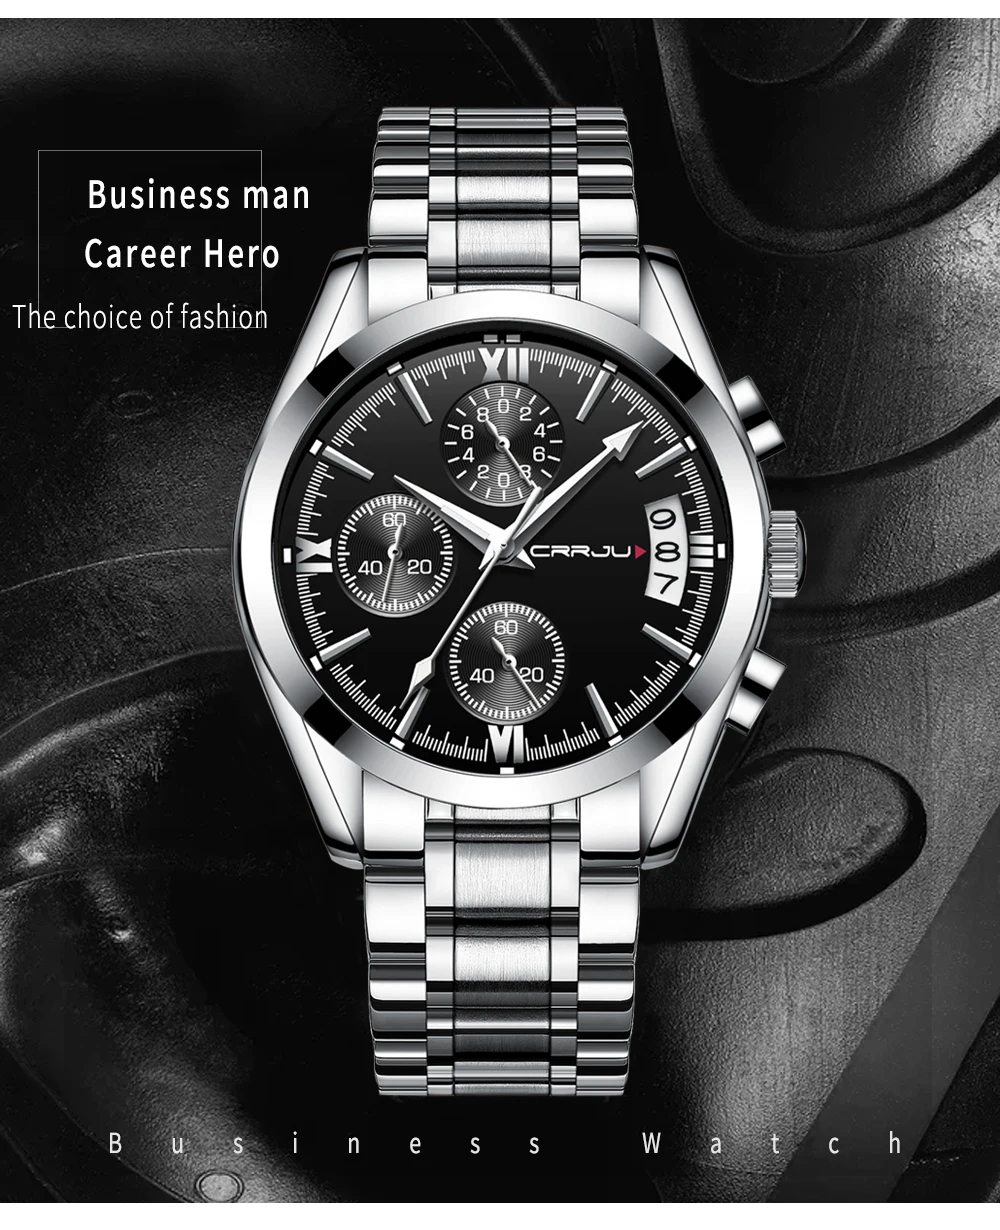 Crrju новый для мужчин s часы Элитный бренд Спорт Кварцевые часы для мужчин сталь повседневное бизнес